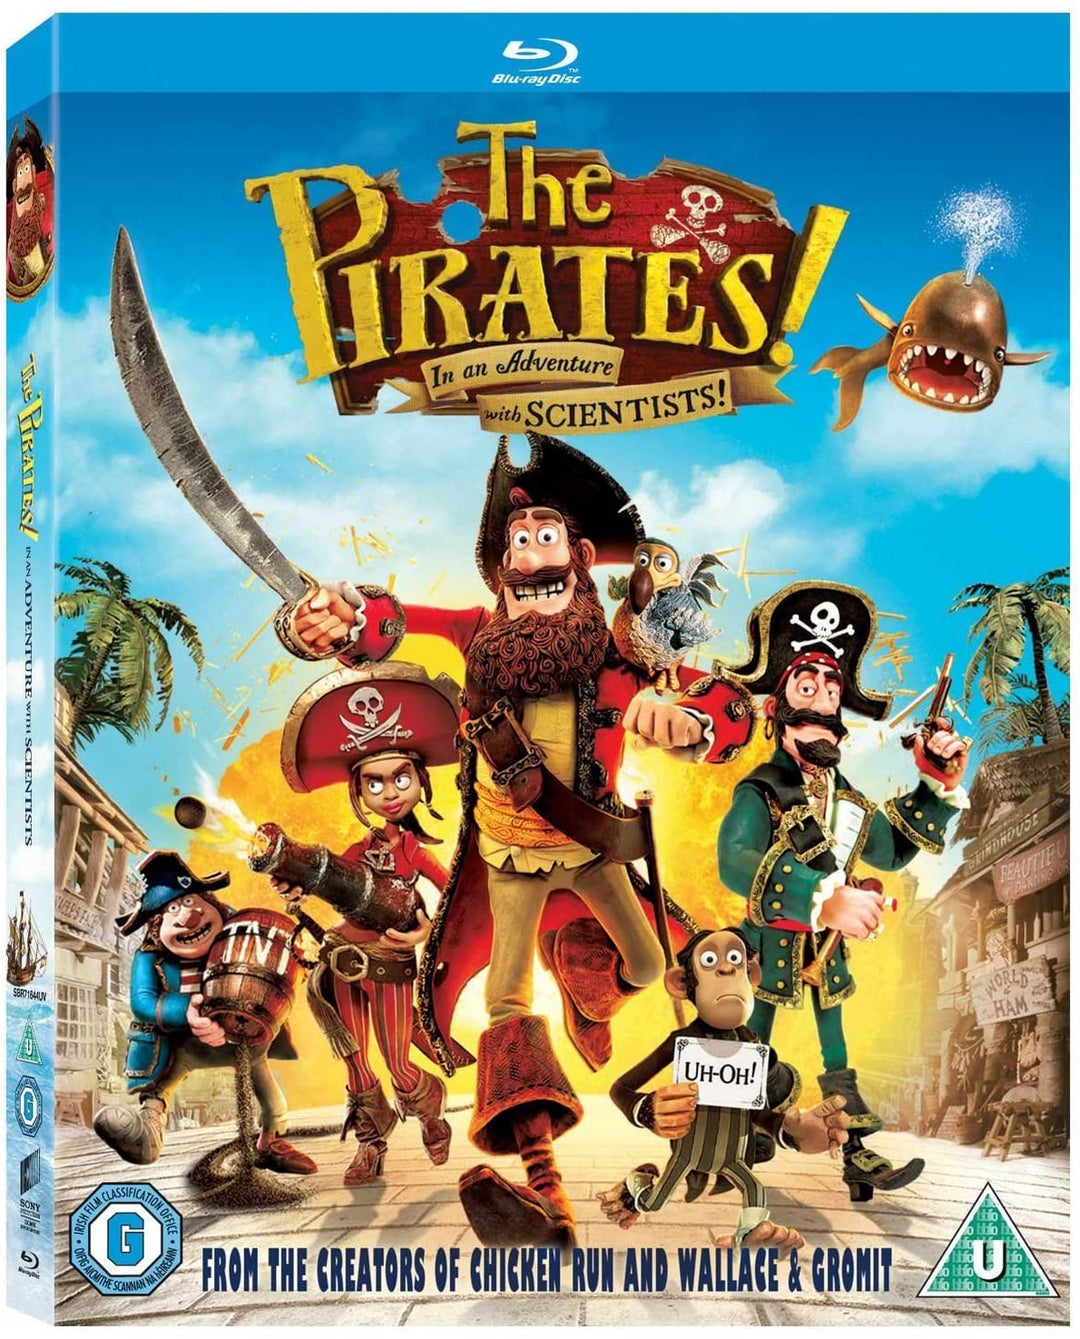 ¡Los piratas! En una aventura con científicos [Blu-ray] [Región gratis]